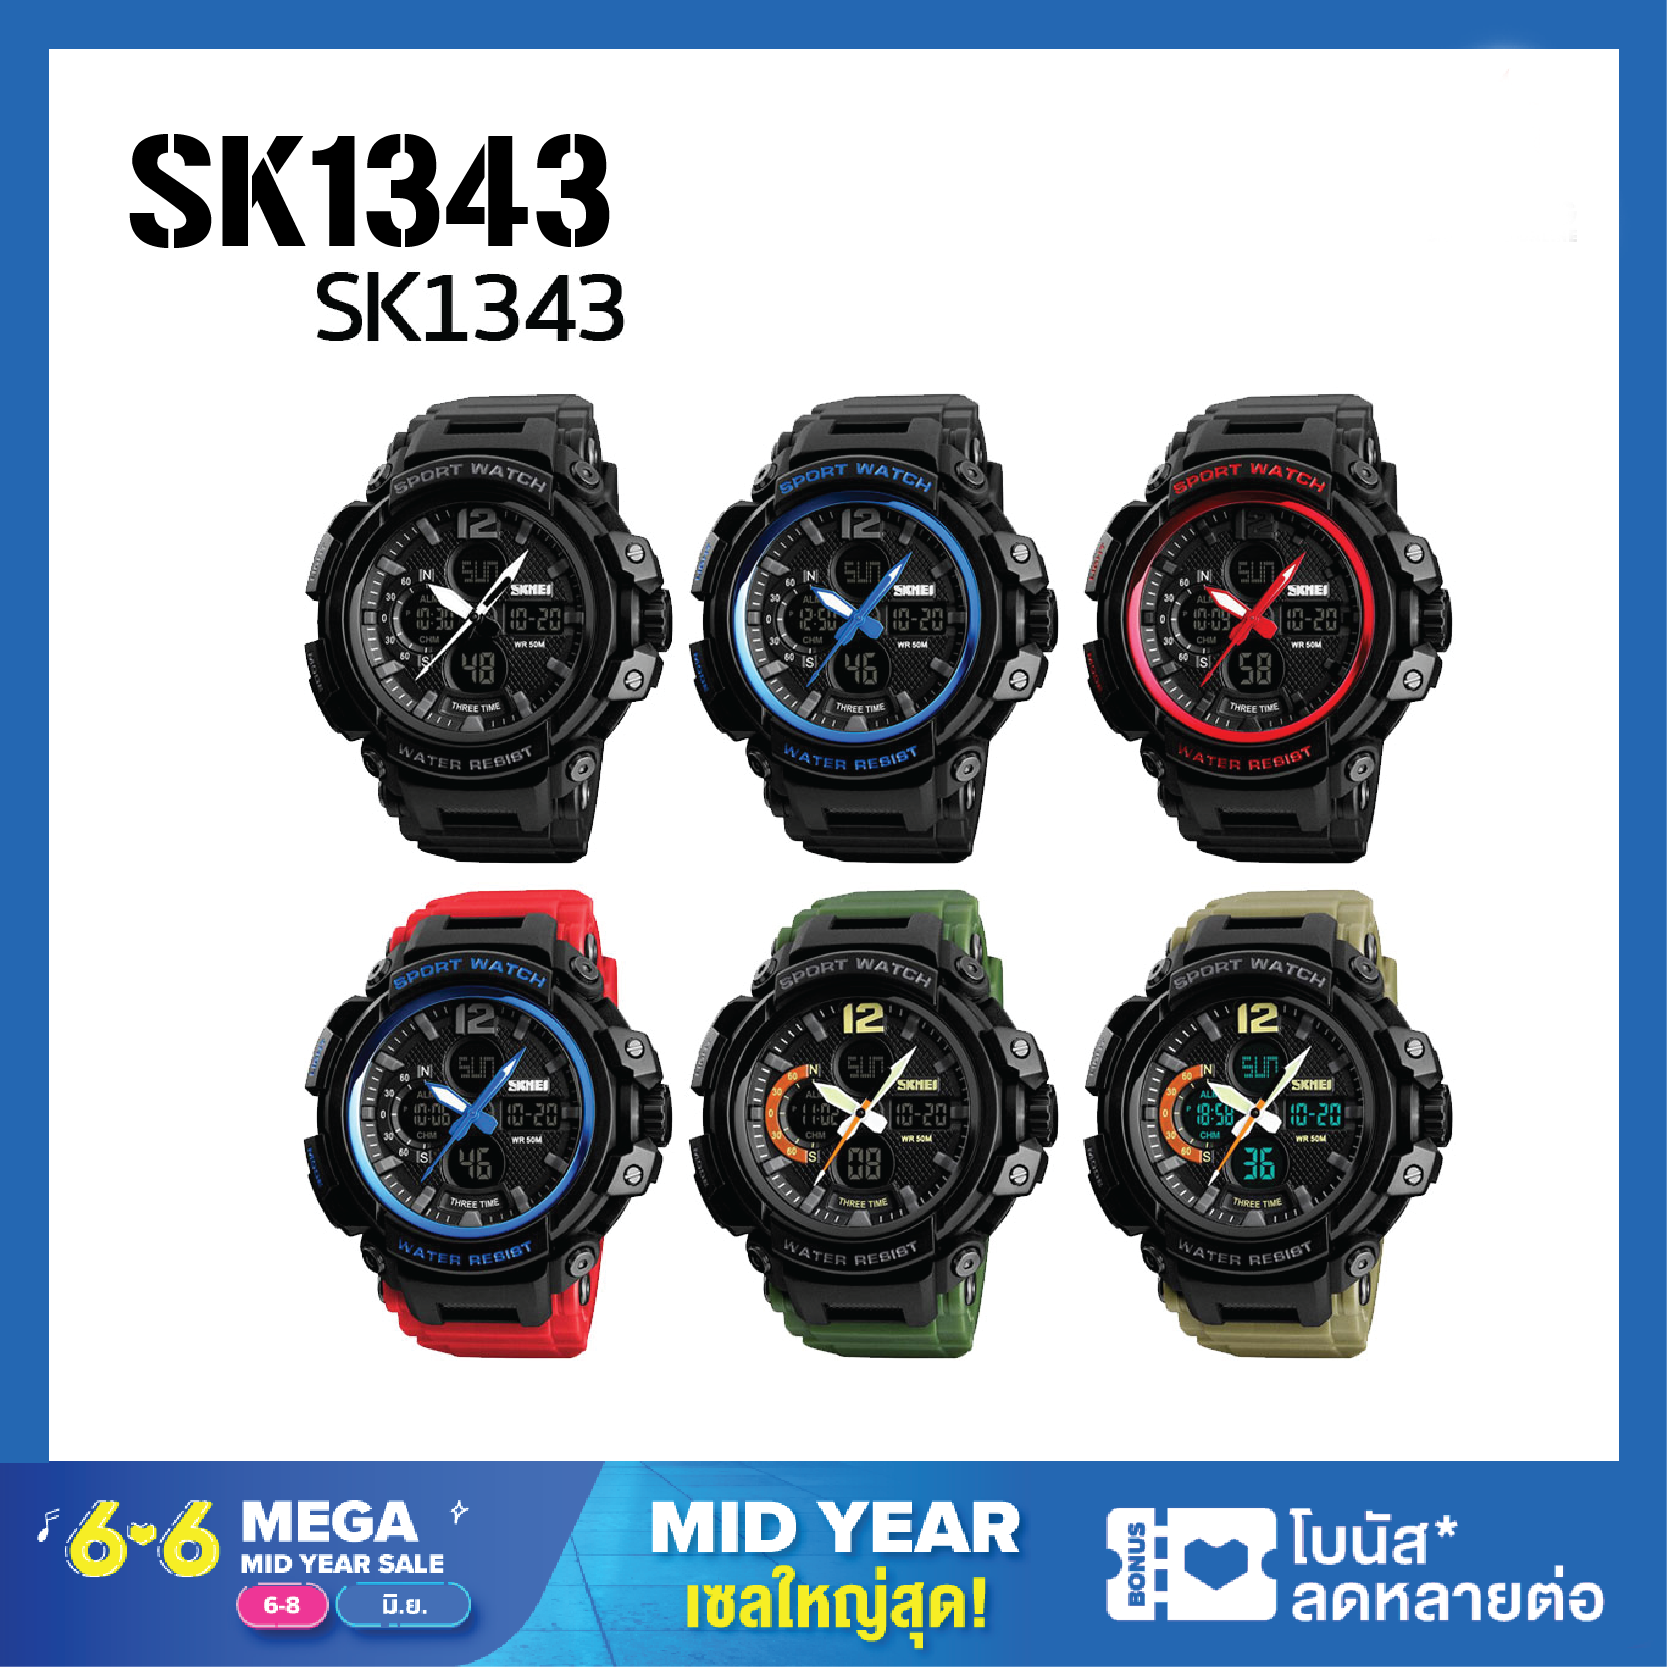 ถูกที่สุด ส่งจากไทย [ ถูกที่สุด ] SKMEI 1343 นาฬิกาข้อมือผู้ชาย นาฬิกา นาฬิกาผู้ชาย นาฬิกาข้อมือ นาฬิกาดิจิตอล นาฬิกากันน้ำ มัลติฟังชั่น สายเรซิน ของแท้ 100% รุ่น SK1343